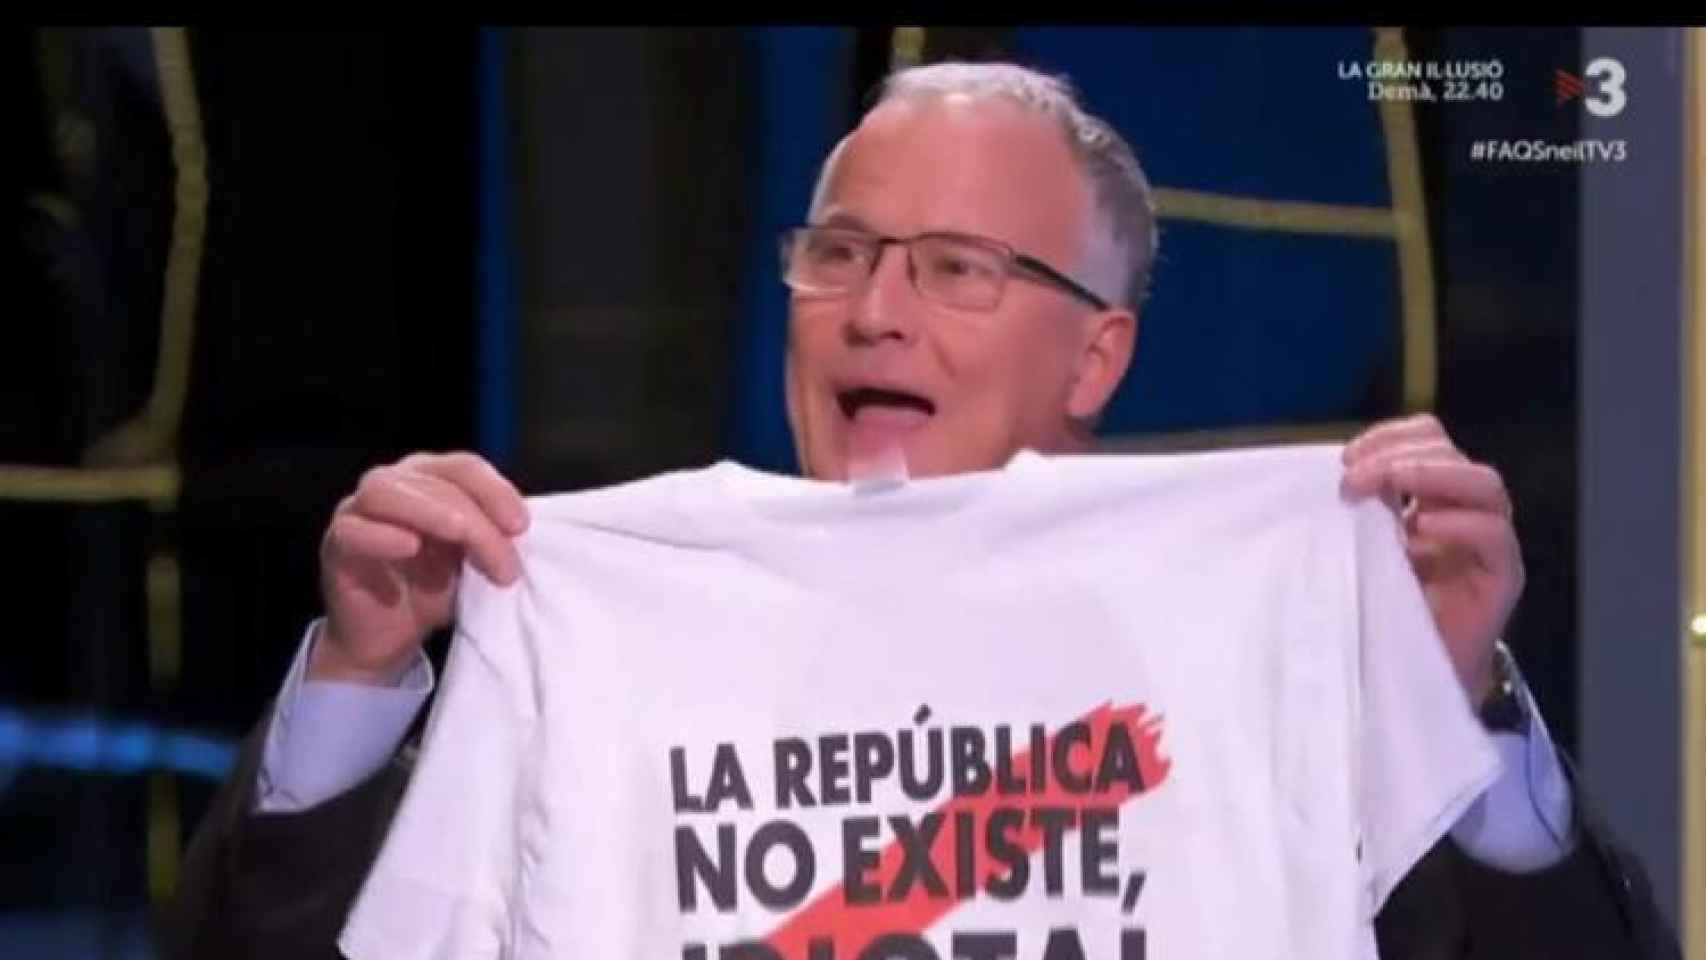 El candidato del PP a la alcaldía de Barcelona, Josep Bou, muestra una camiseta con el lema La república no existe, idiota / TV3